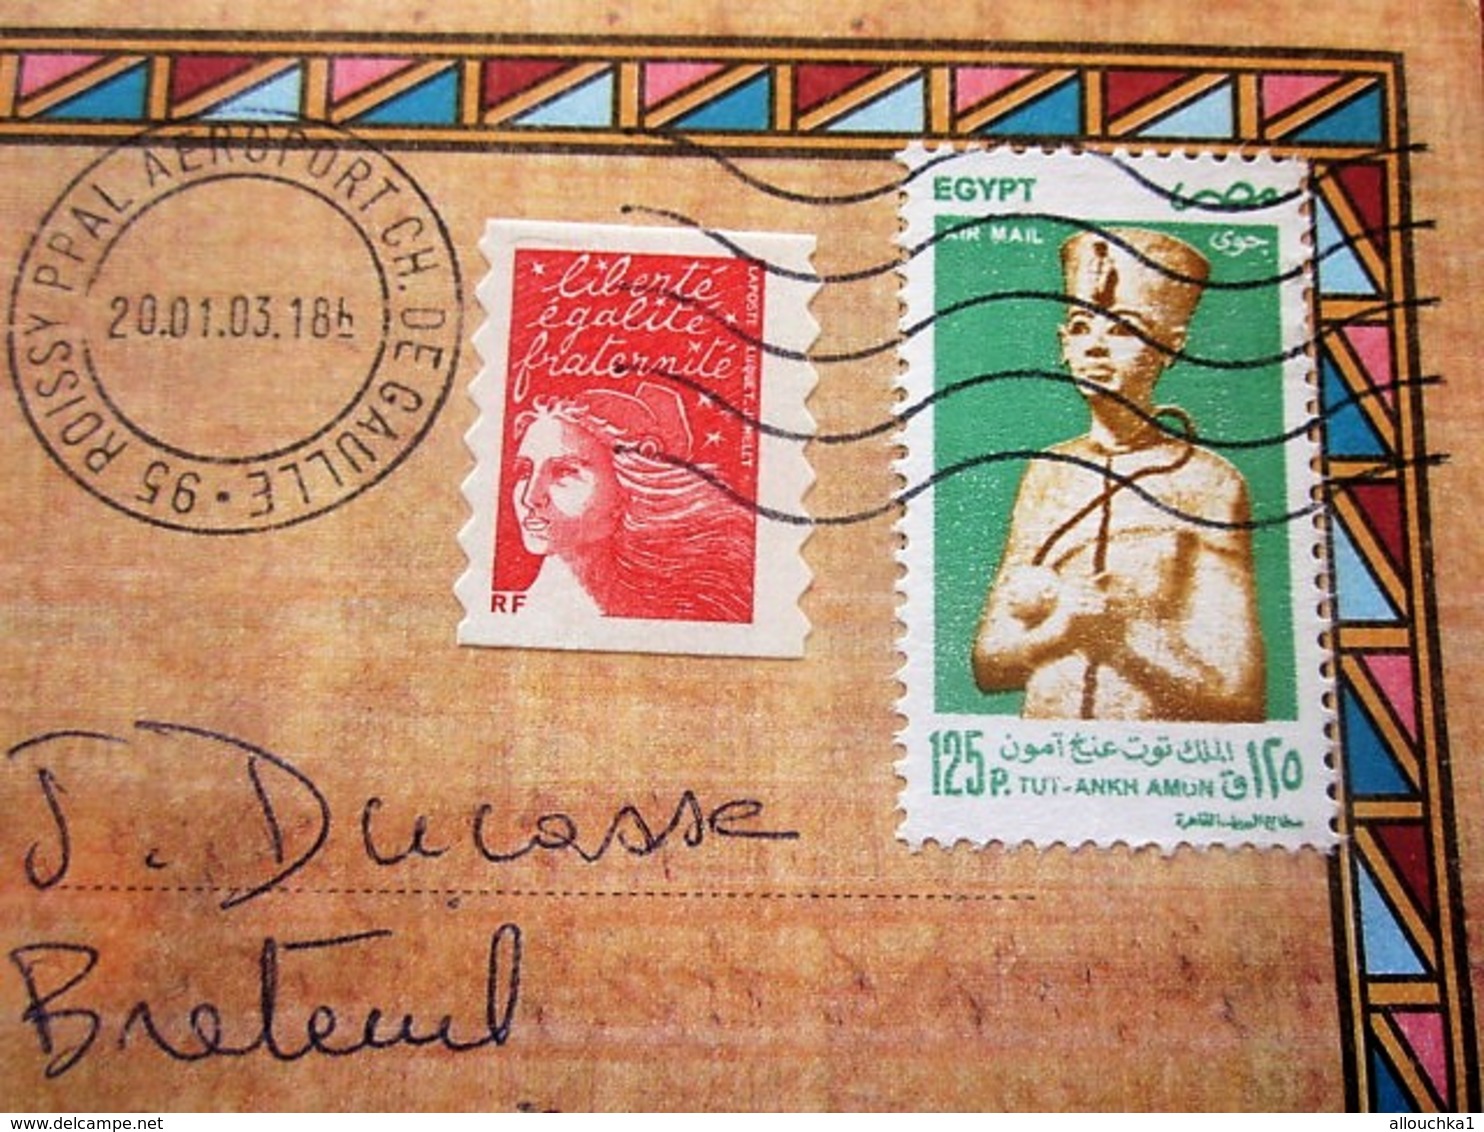 Curiosité Aff Composé Timbres Egyptien+français Posté Aéroport Orly CDG Plutot Qu'au Caire Lettre+Carte Postale Egypte - Covers & Documents